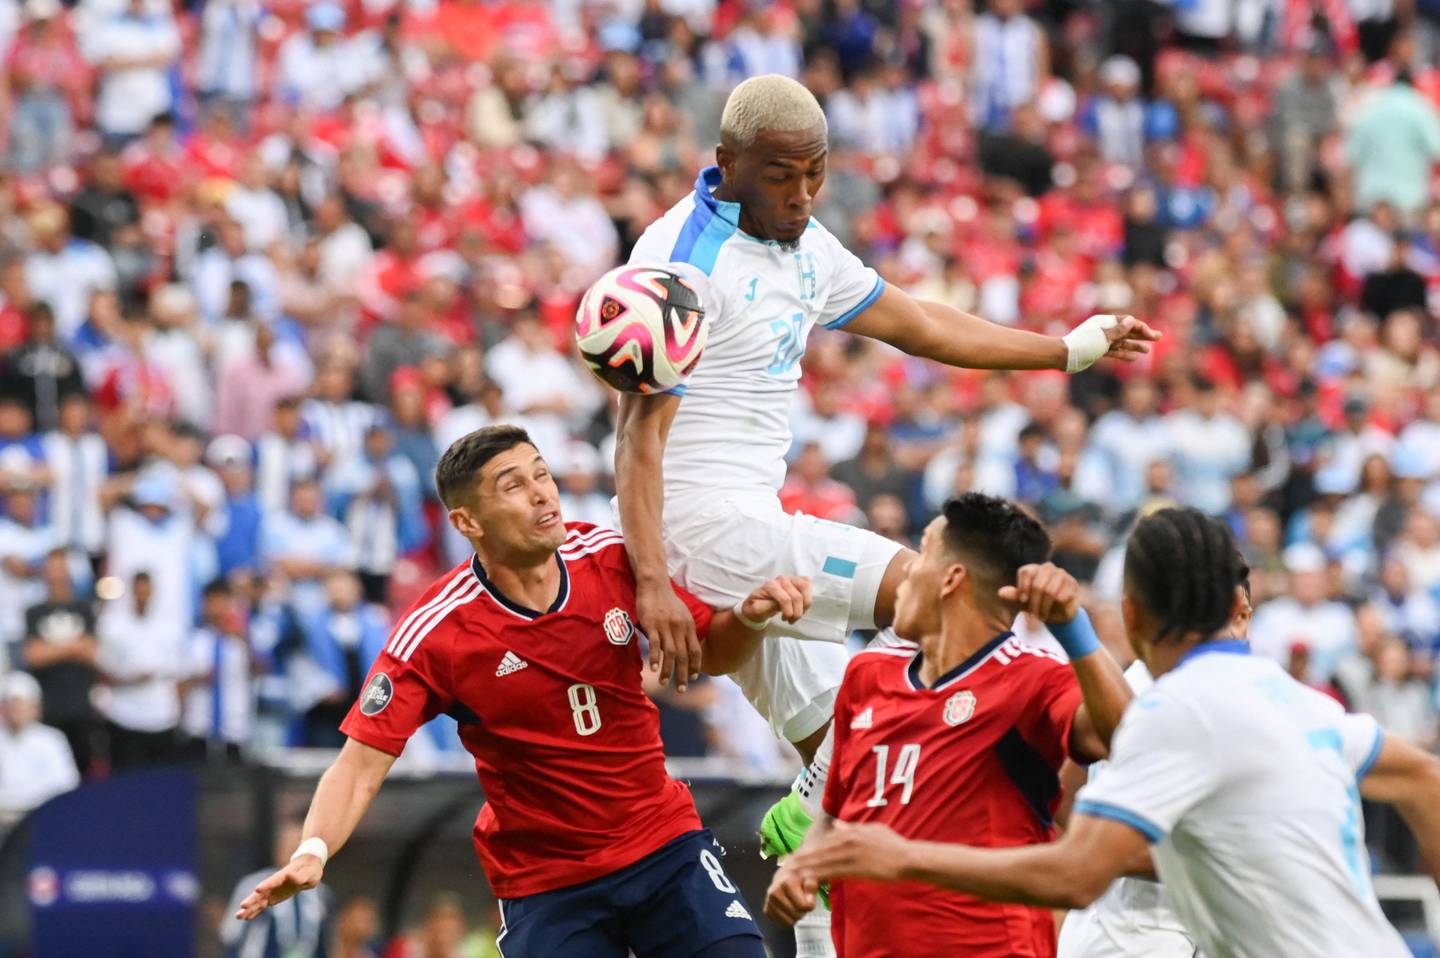 Costa Rica empezó perdiendo, pero logró darle vuelta al marcador.